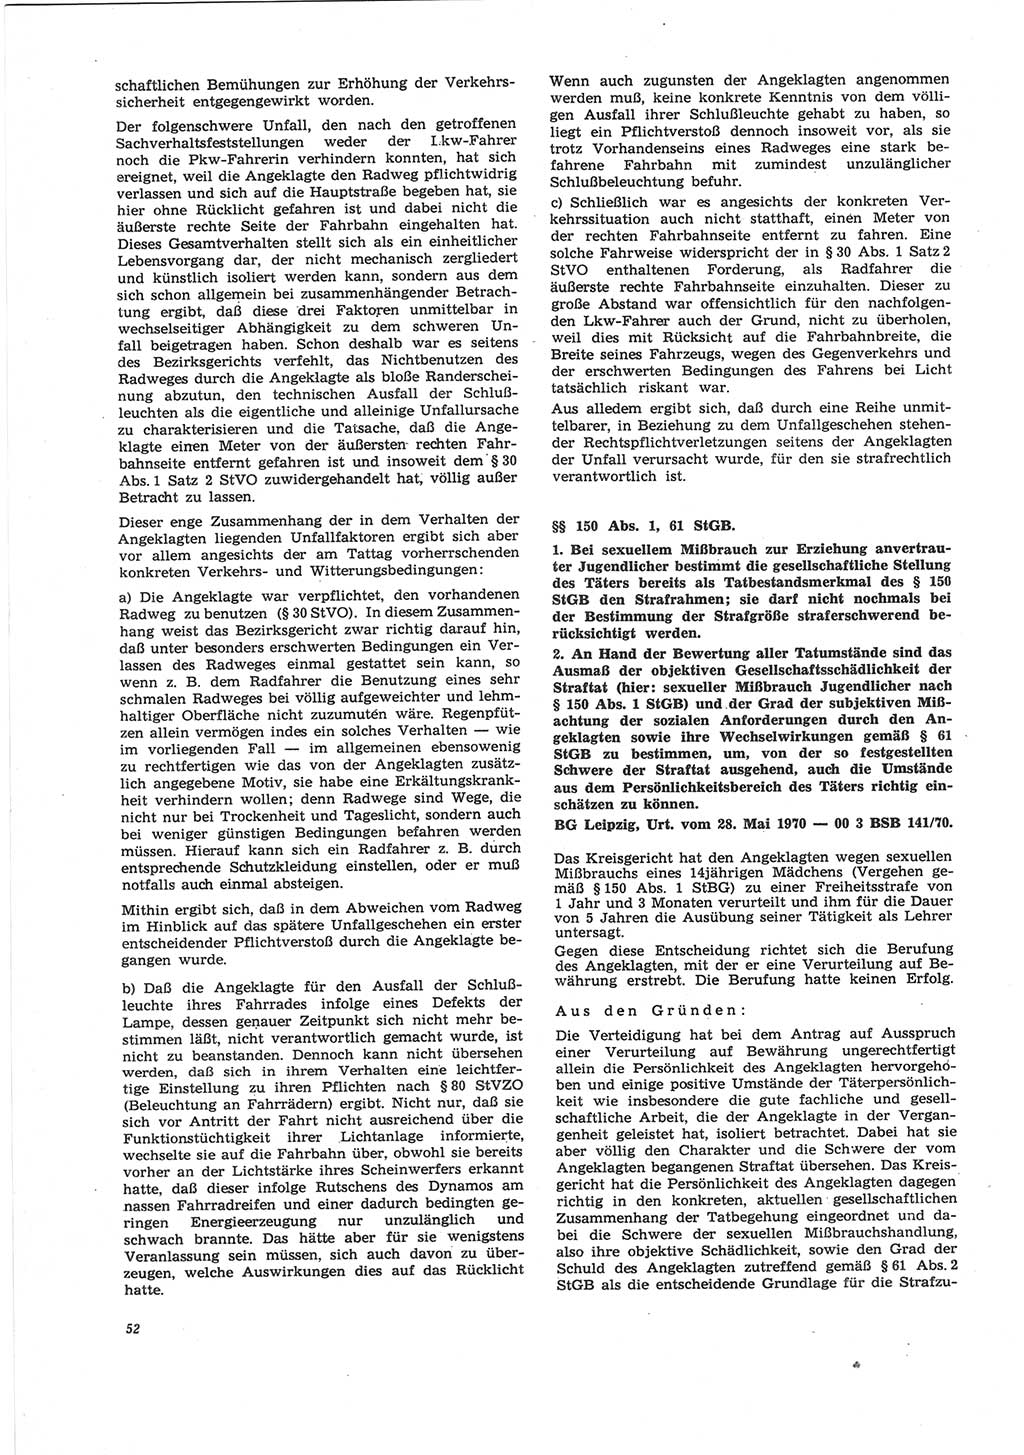 Neue Justiz (NJ), Zeitschrift für Recht und Rechtswissenschaft [Deutsche Demokratische Republik (DDR)], 25. Jahrgang 1971, Seite 52 (NJ DDR 1971, S. 52)